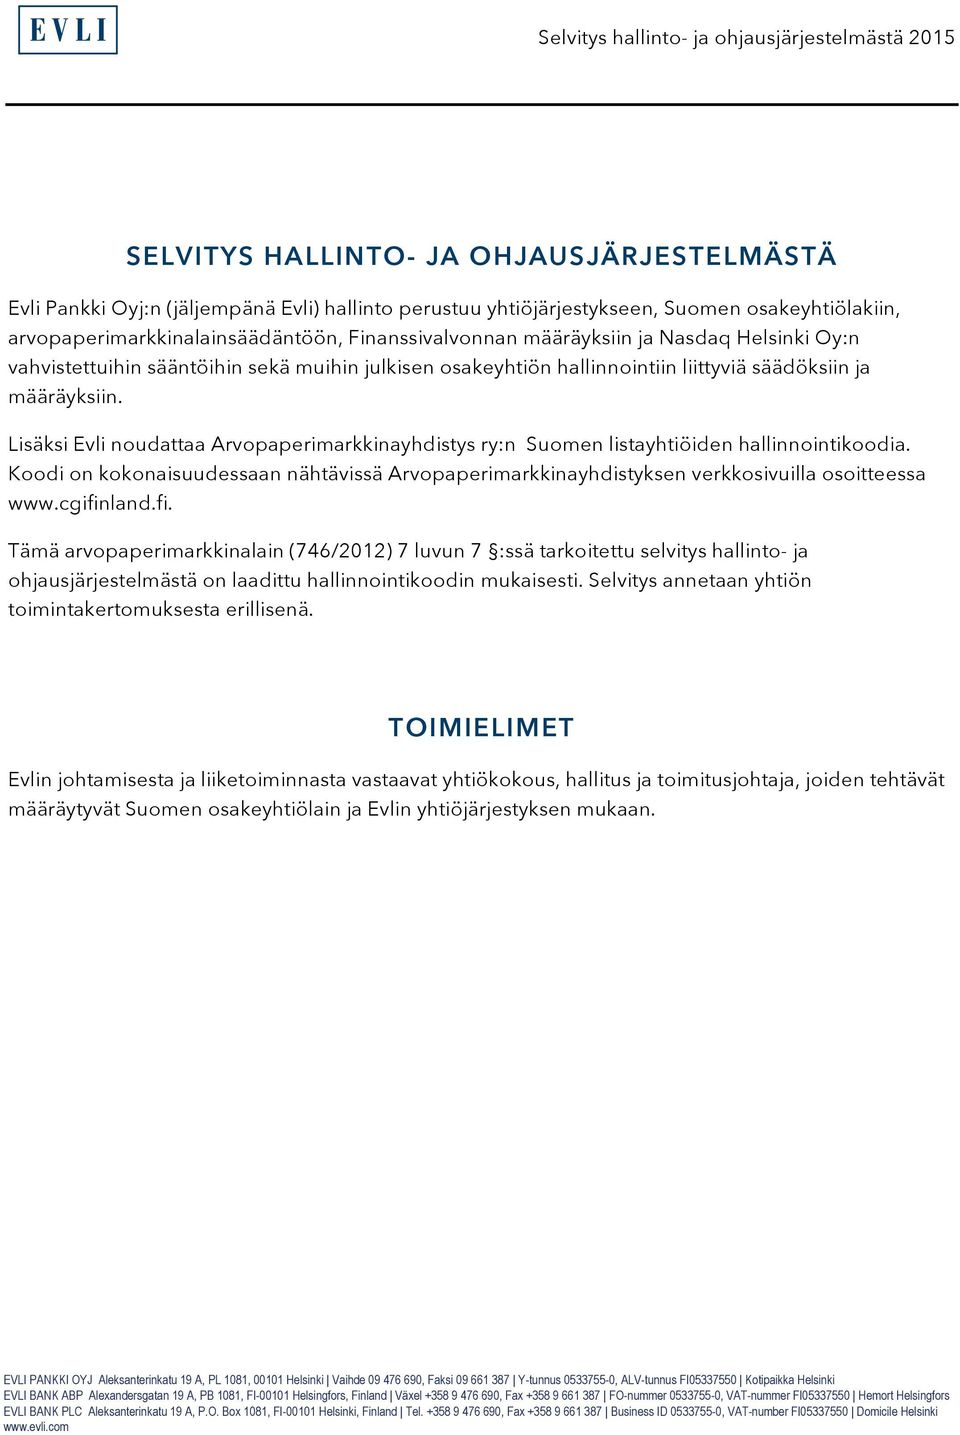 Lisäksi Evli noudattaa Arvopaperimarkkinayhdistys ry:n Suomen listayhtiöiden hallinnointikoodia. Koodi on kokonaisuudessaan nähtävissä Arvopaperimarkkinayhdistyksen verkkosivuilla osoitteessa www.